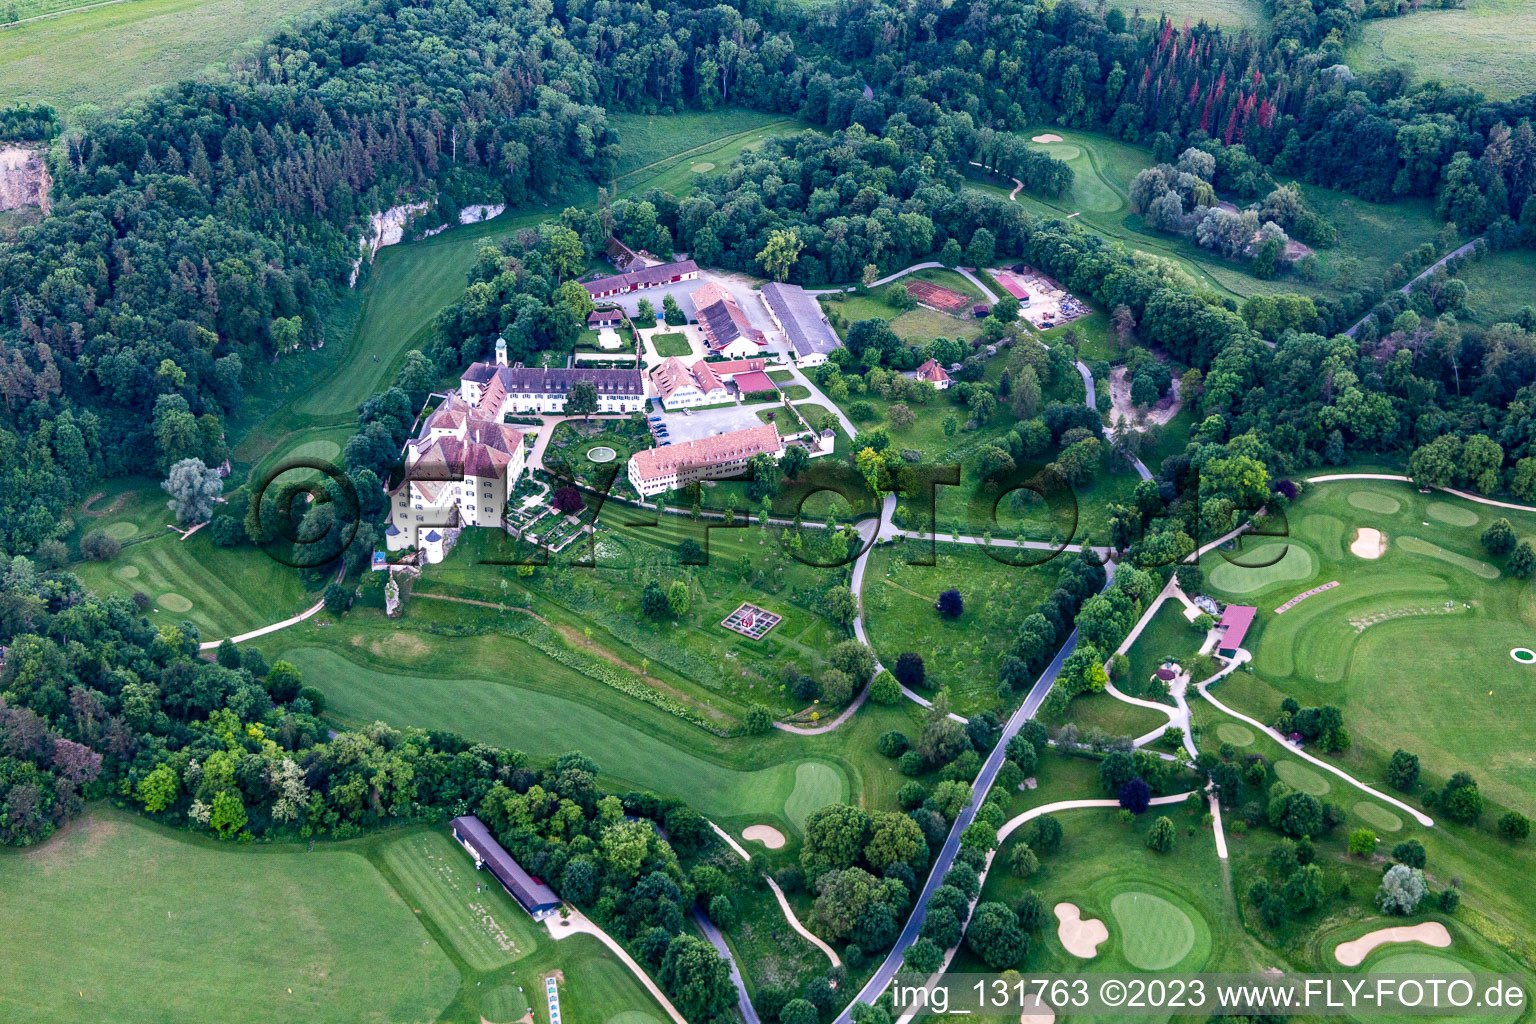 Schrägluftbild von Der Country Club Schloss Langenstein - Der Golfplatz am Bodensee in Orsingen-Nenzingen im Bundesland Baden-Württemberg, Deutschland